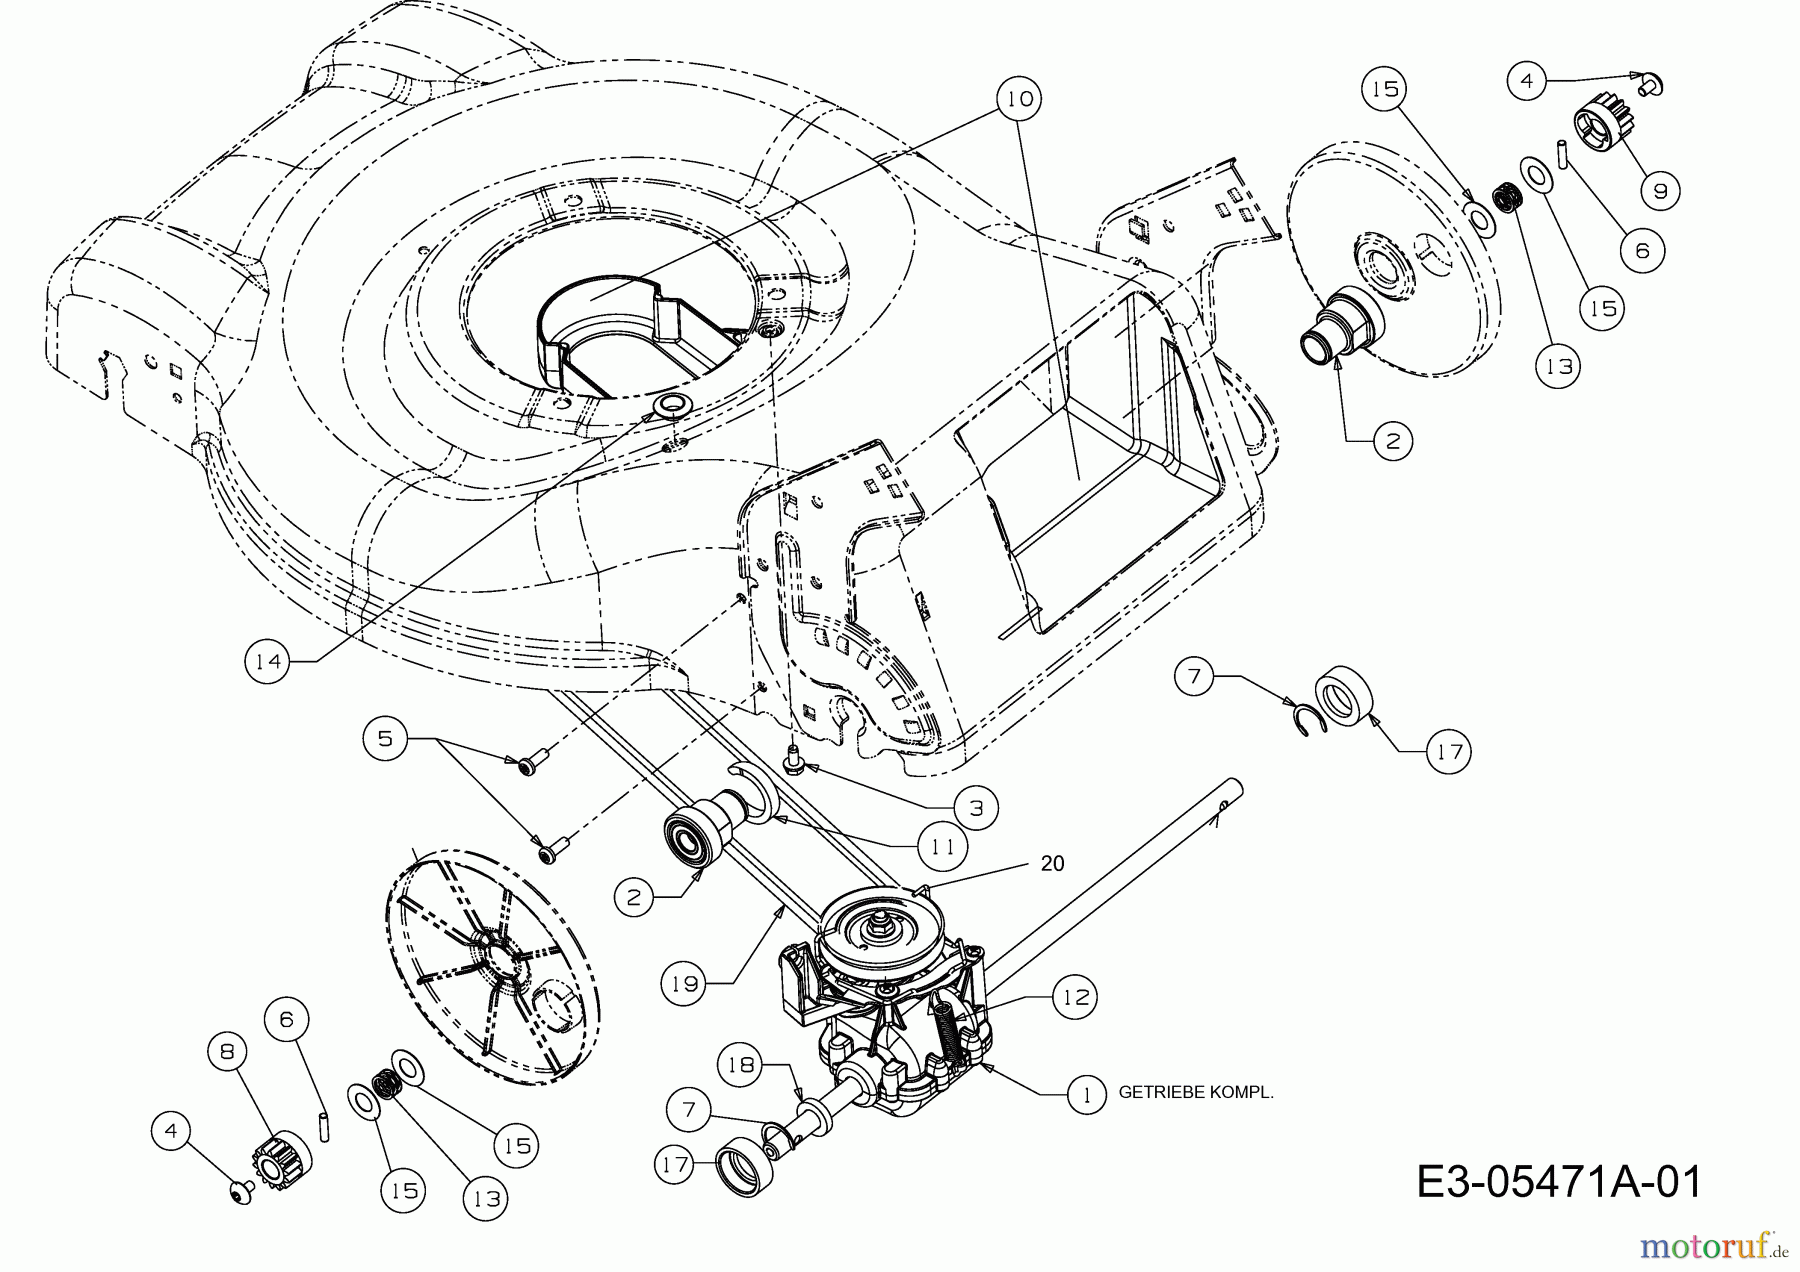  Plantiflor Motormäher mit Antrieb BMR 46 12E-J5JS601  (2011) Getriebe